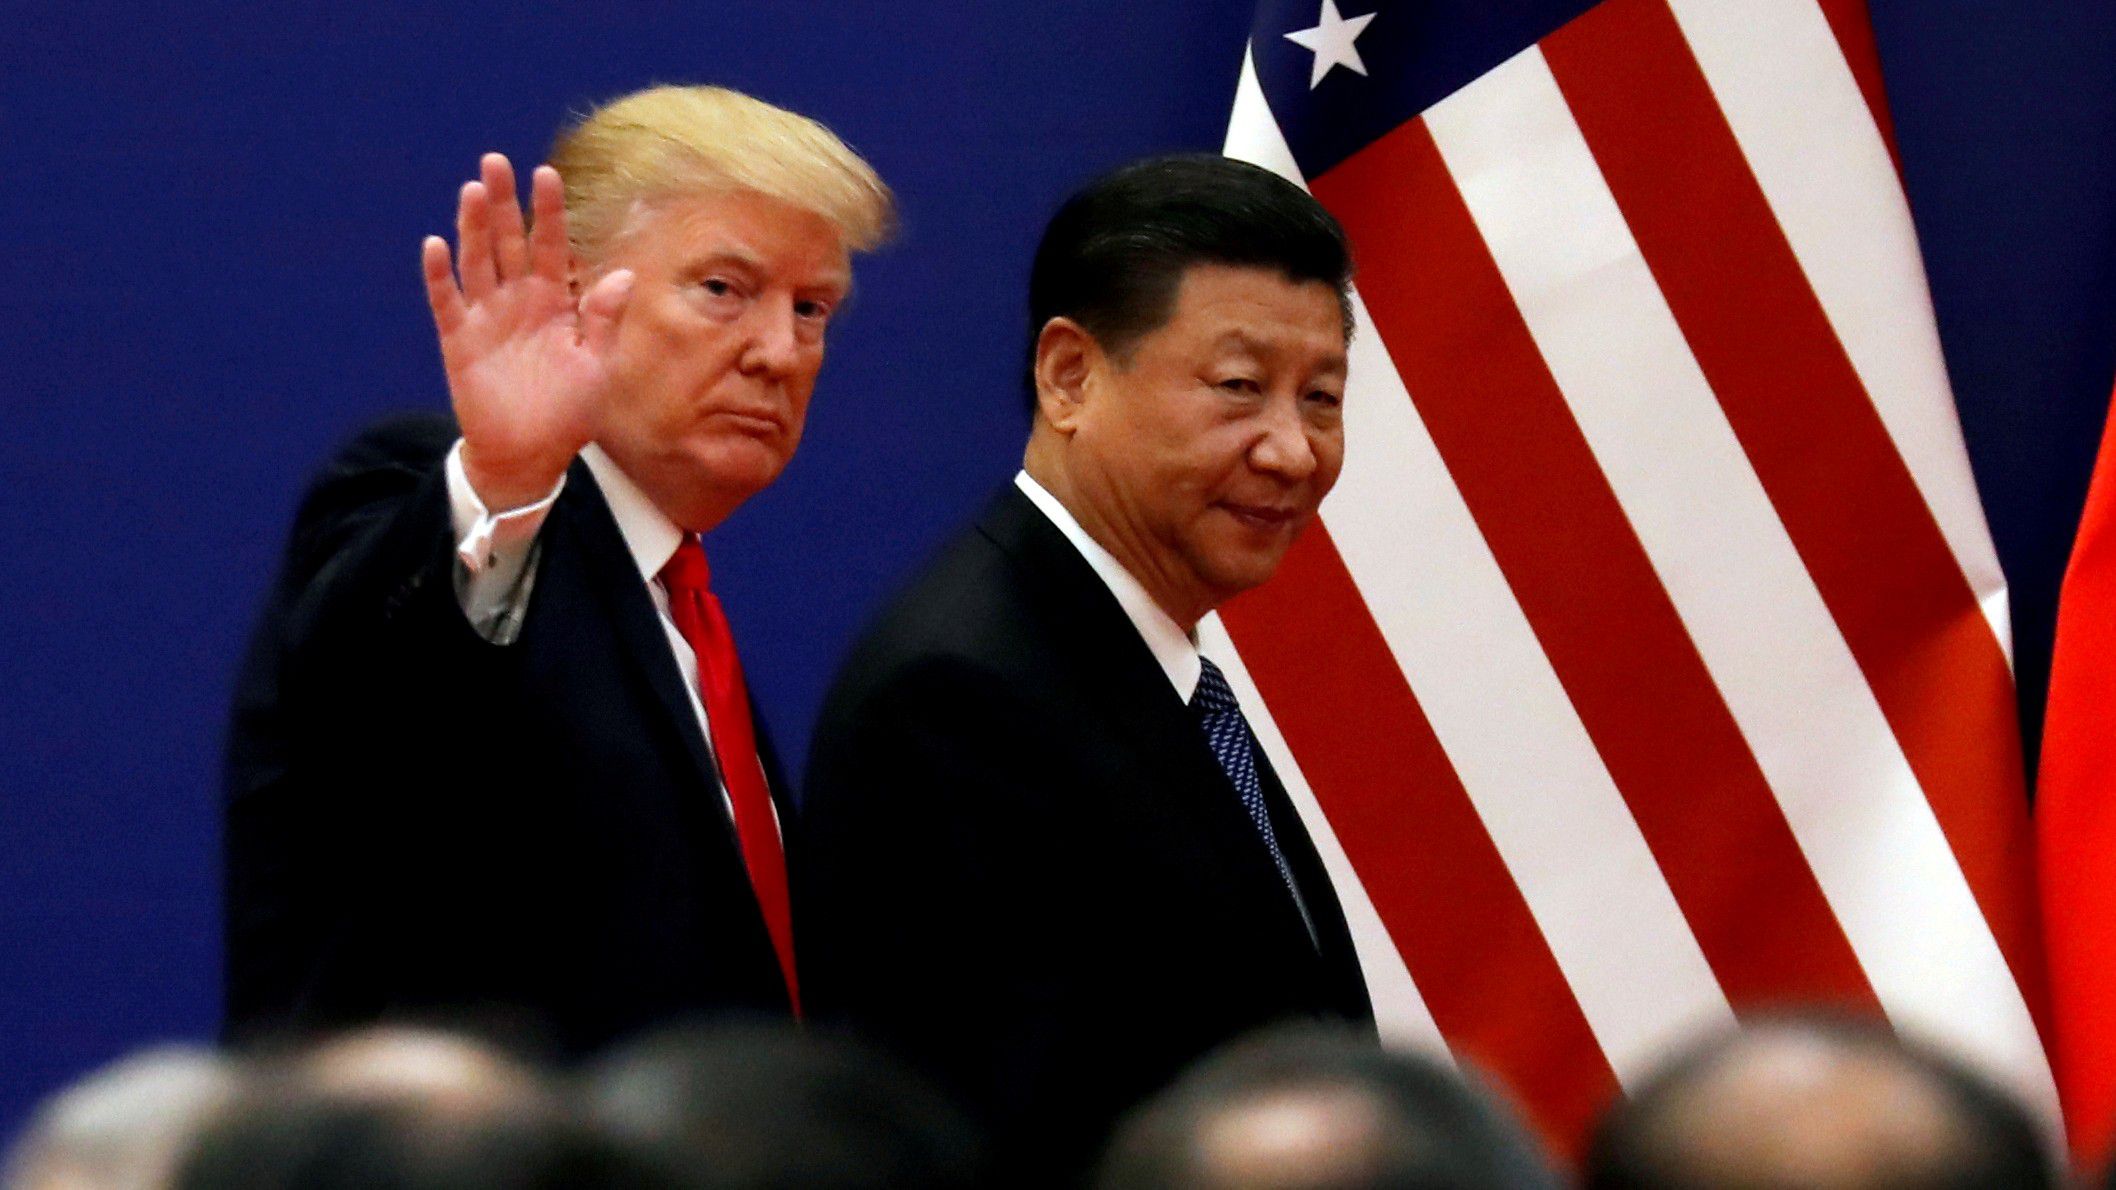 Donald Trump, presidente de Estados Unidos, y Xi Jinping, presidente de la República Popular China